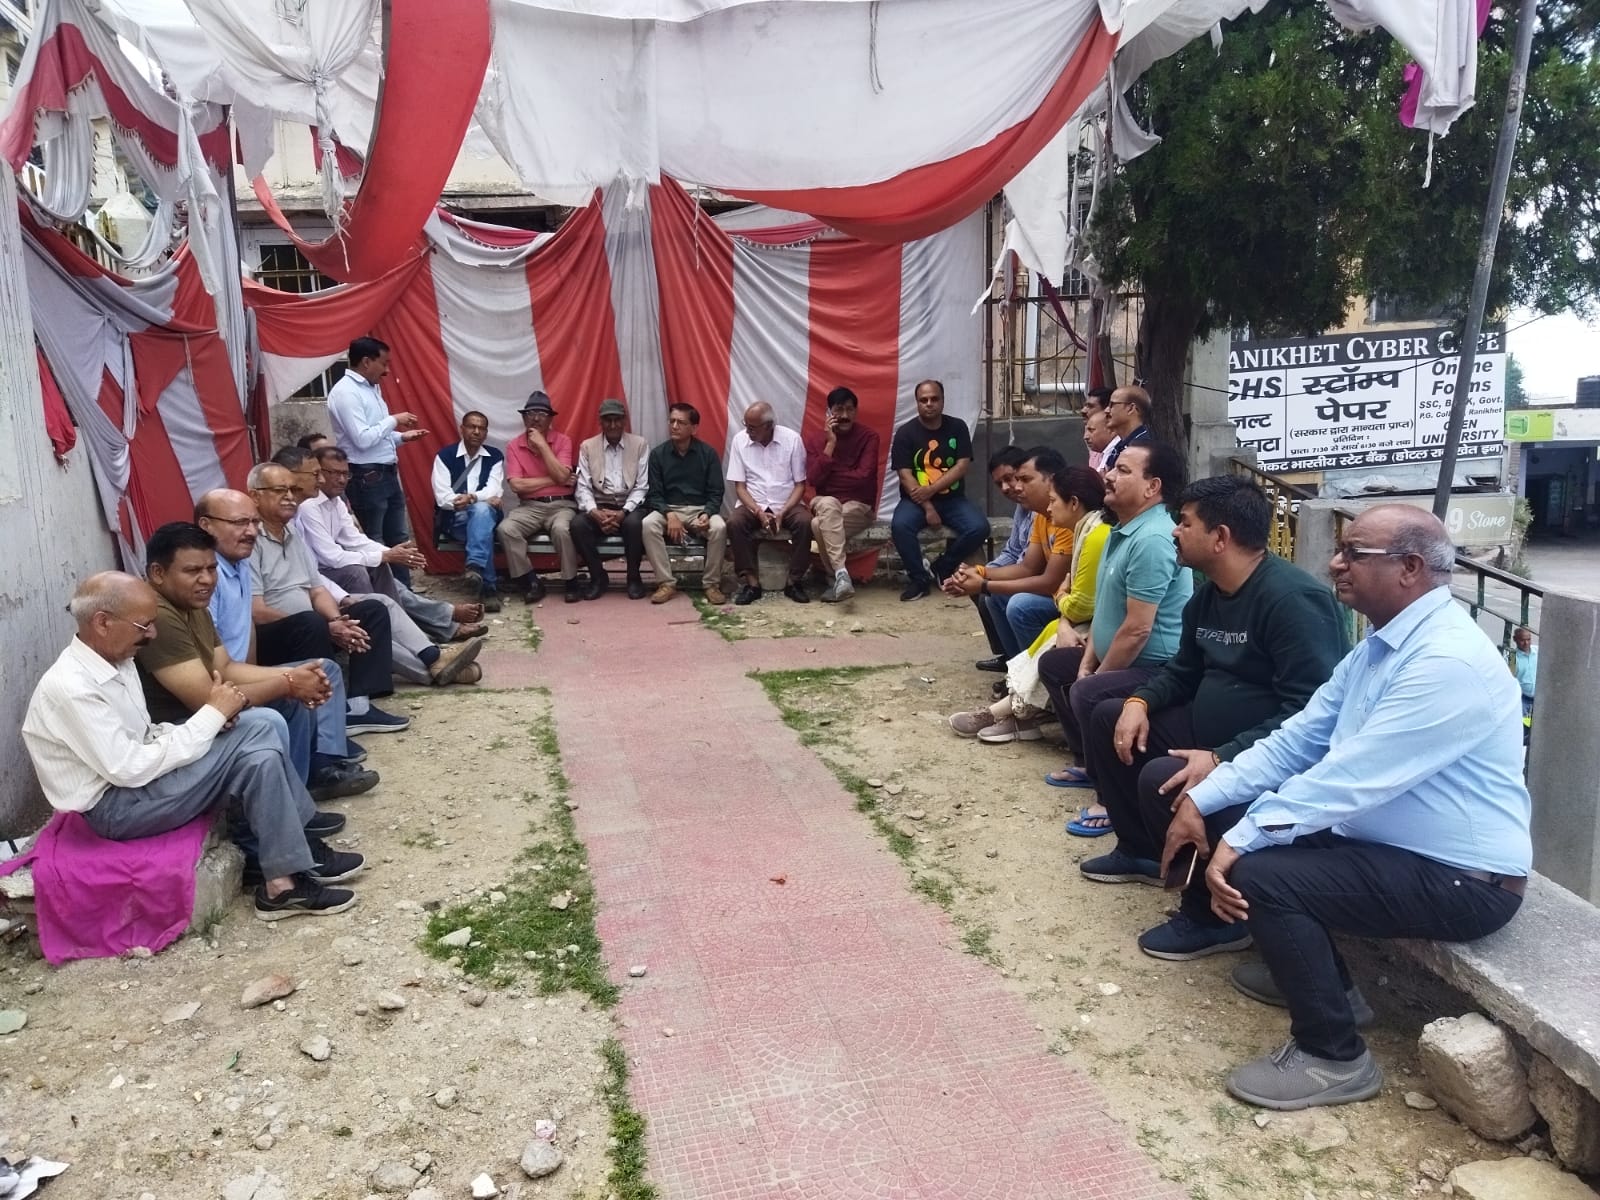 छावनी परिषद से सिविल एरिया को पृथक कर चिलियानौला -रानीखेत नगर पालिका में शामिल करने की मांग पर धरना-प्रदर्शन 82वें दिन जारी